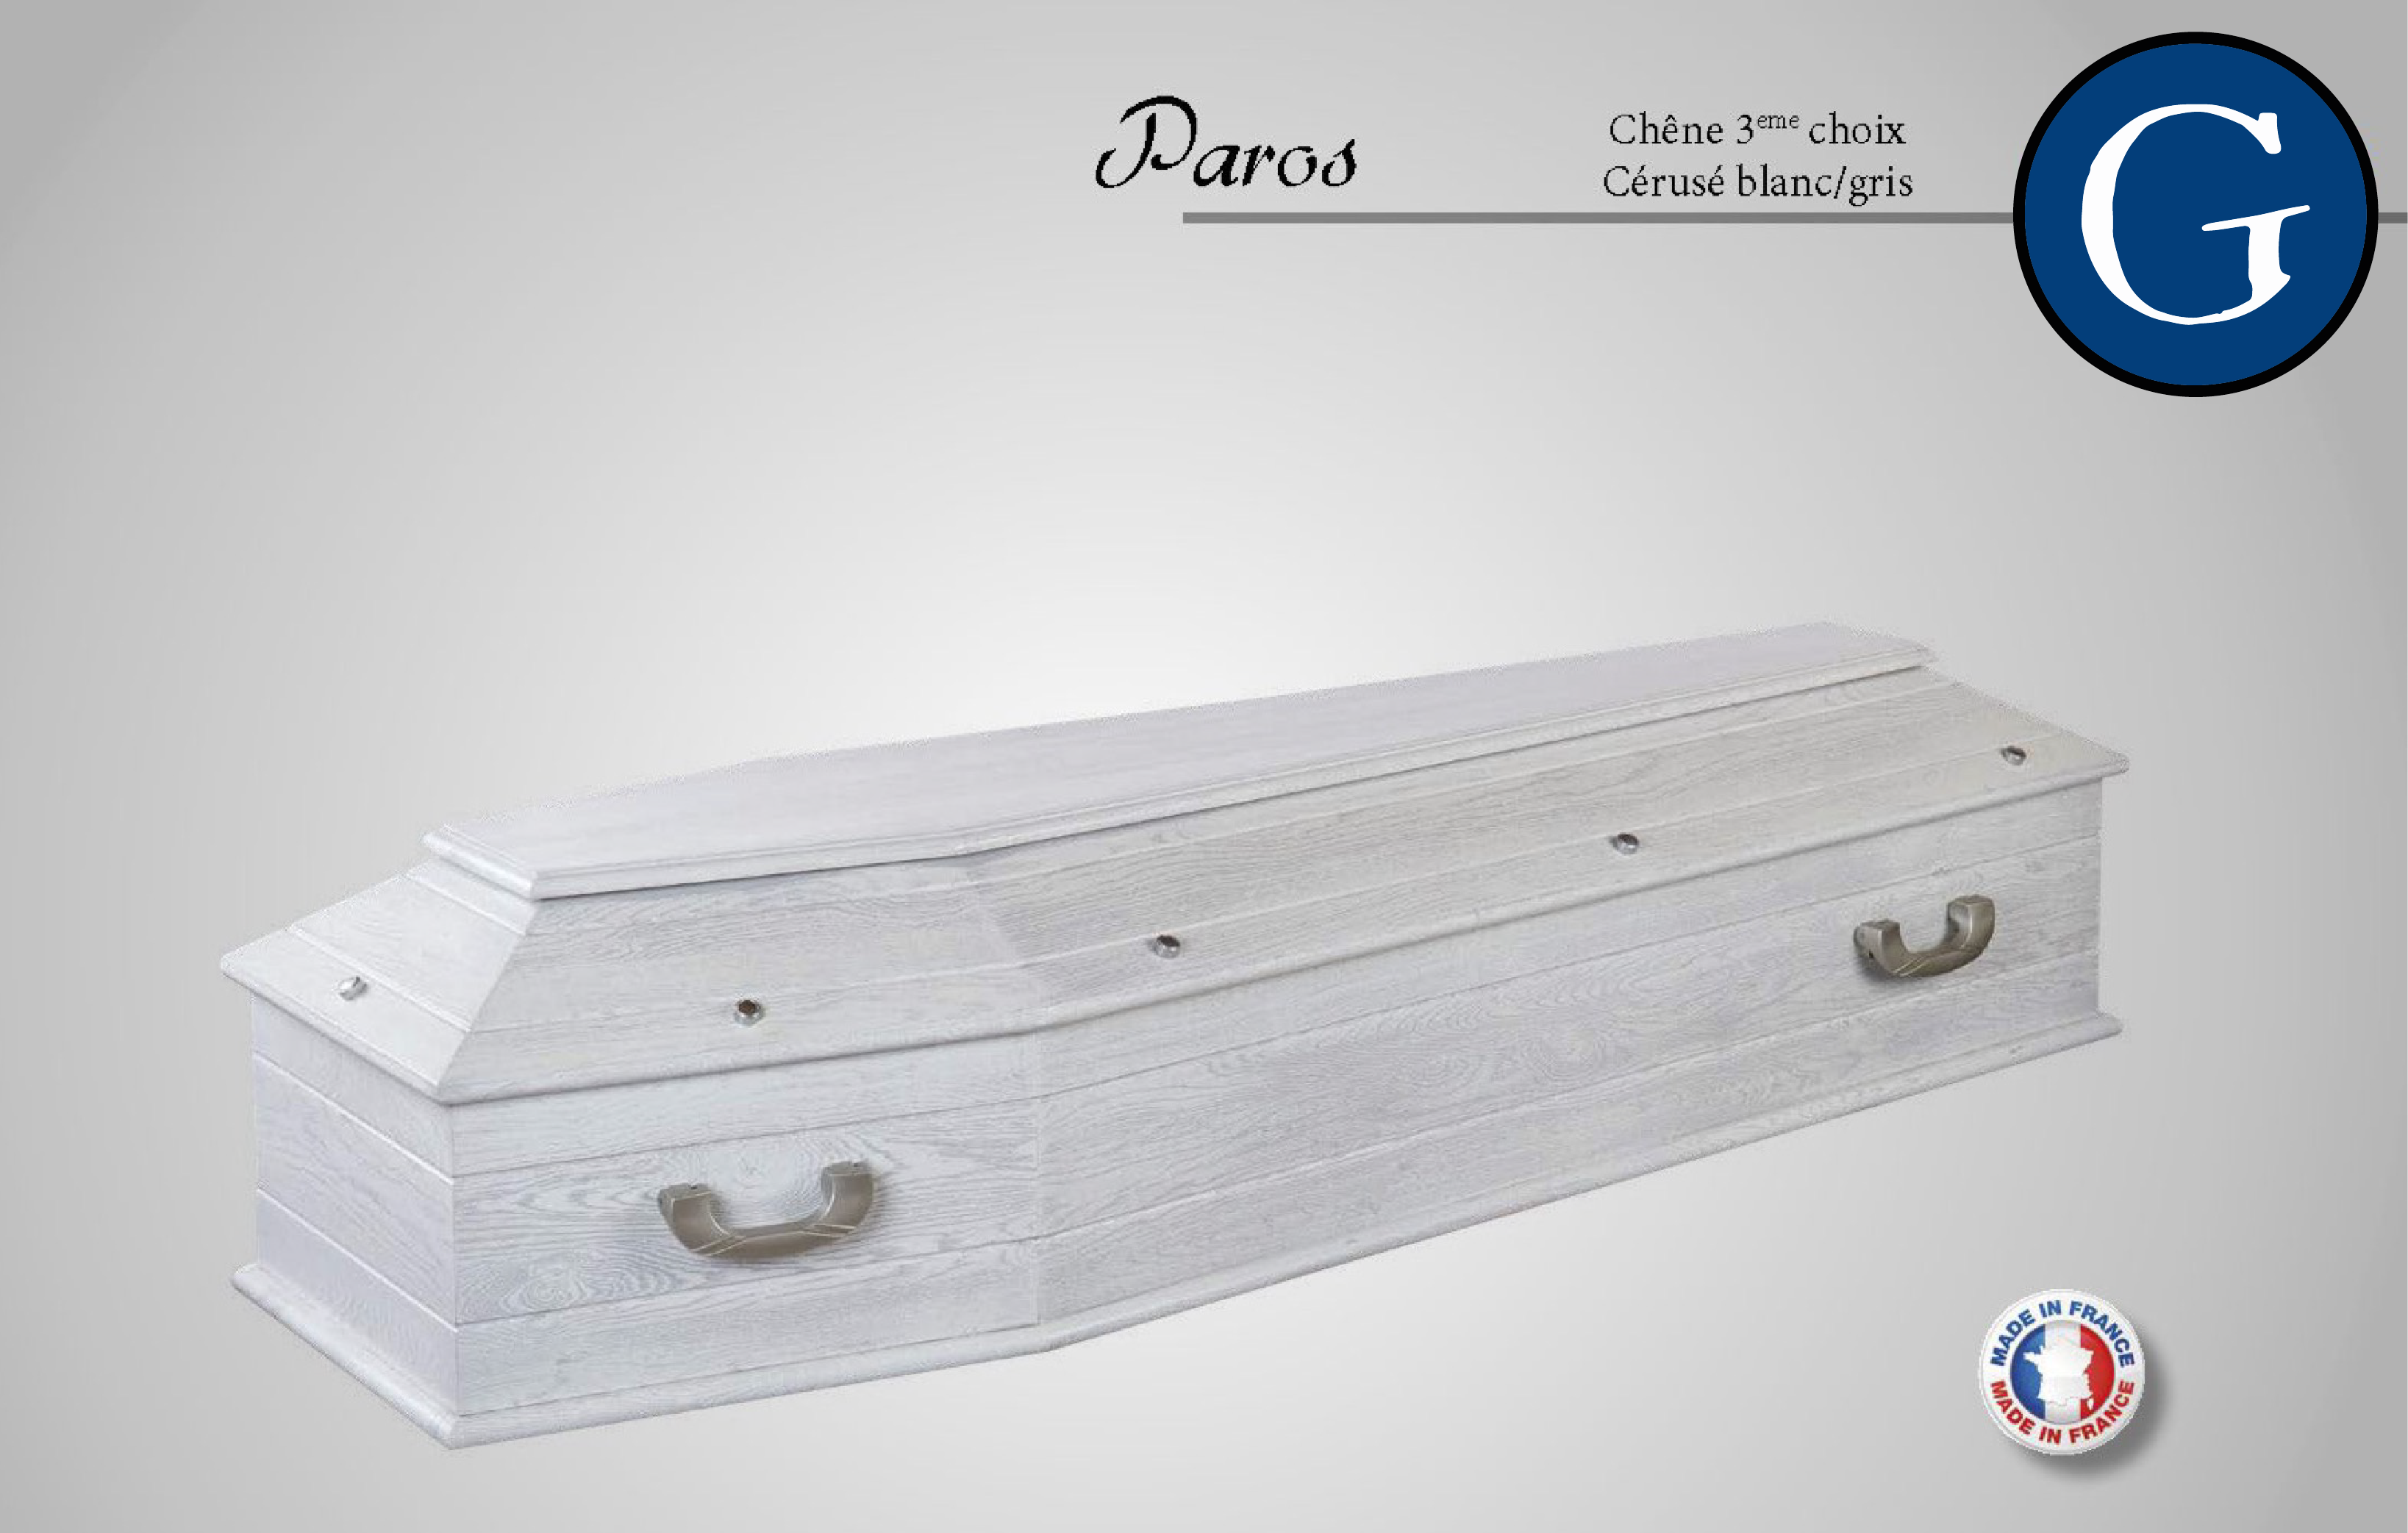 Cercueil Paros - Chêne 3ème choix Cérusé blanc/gris